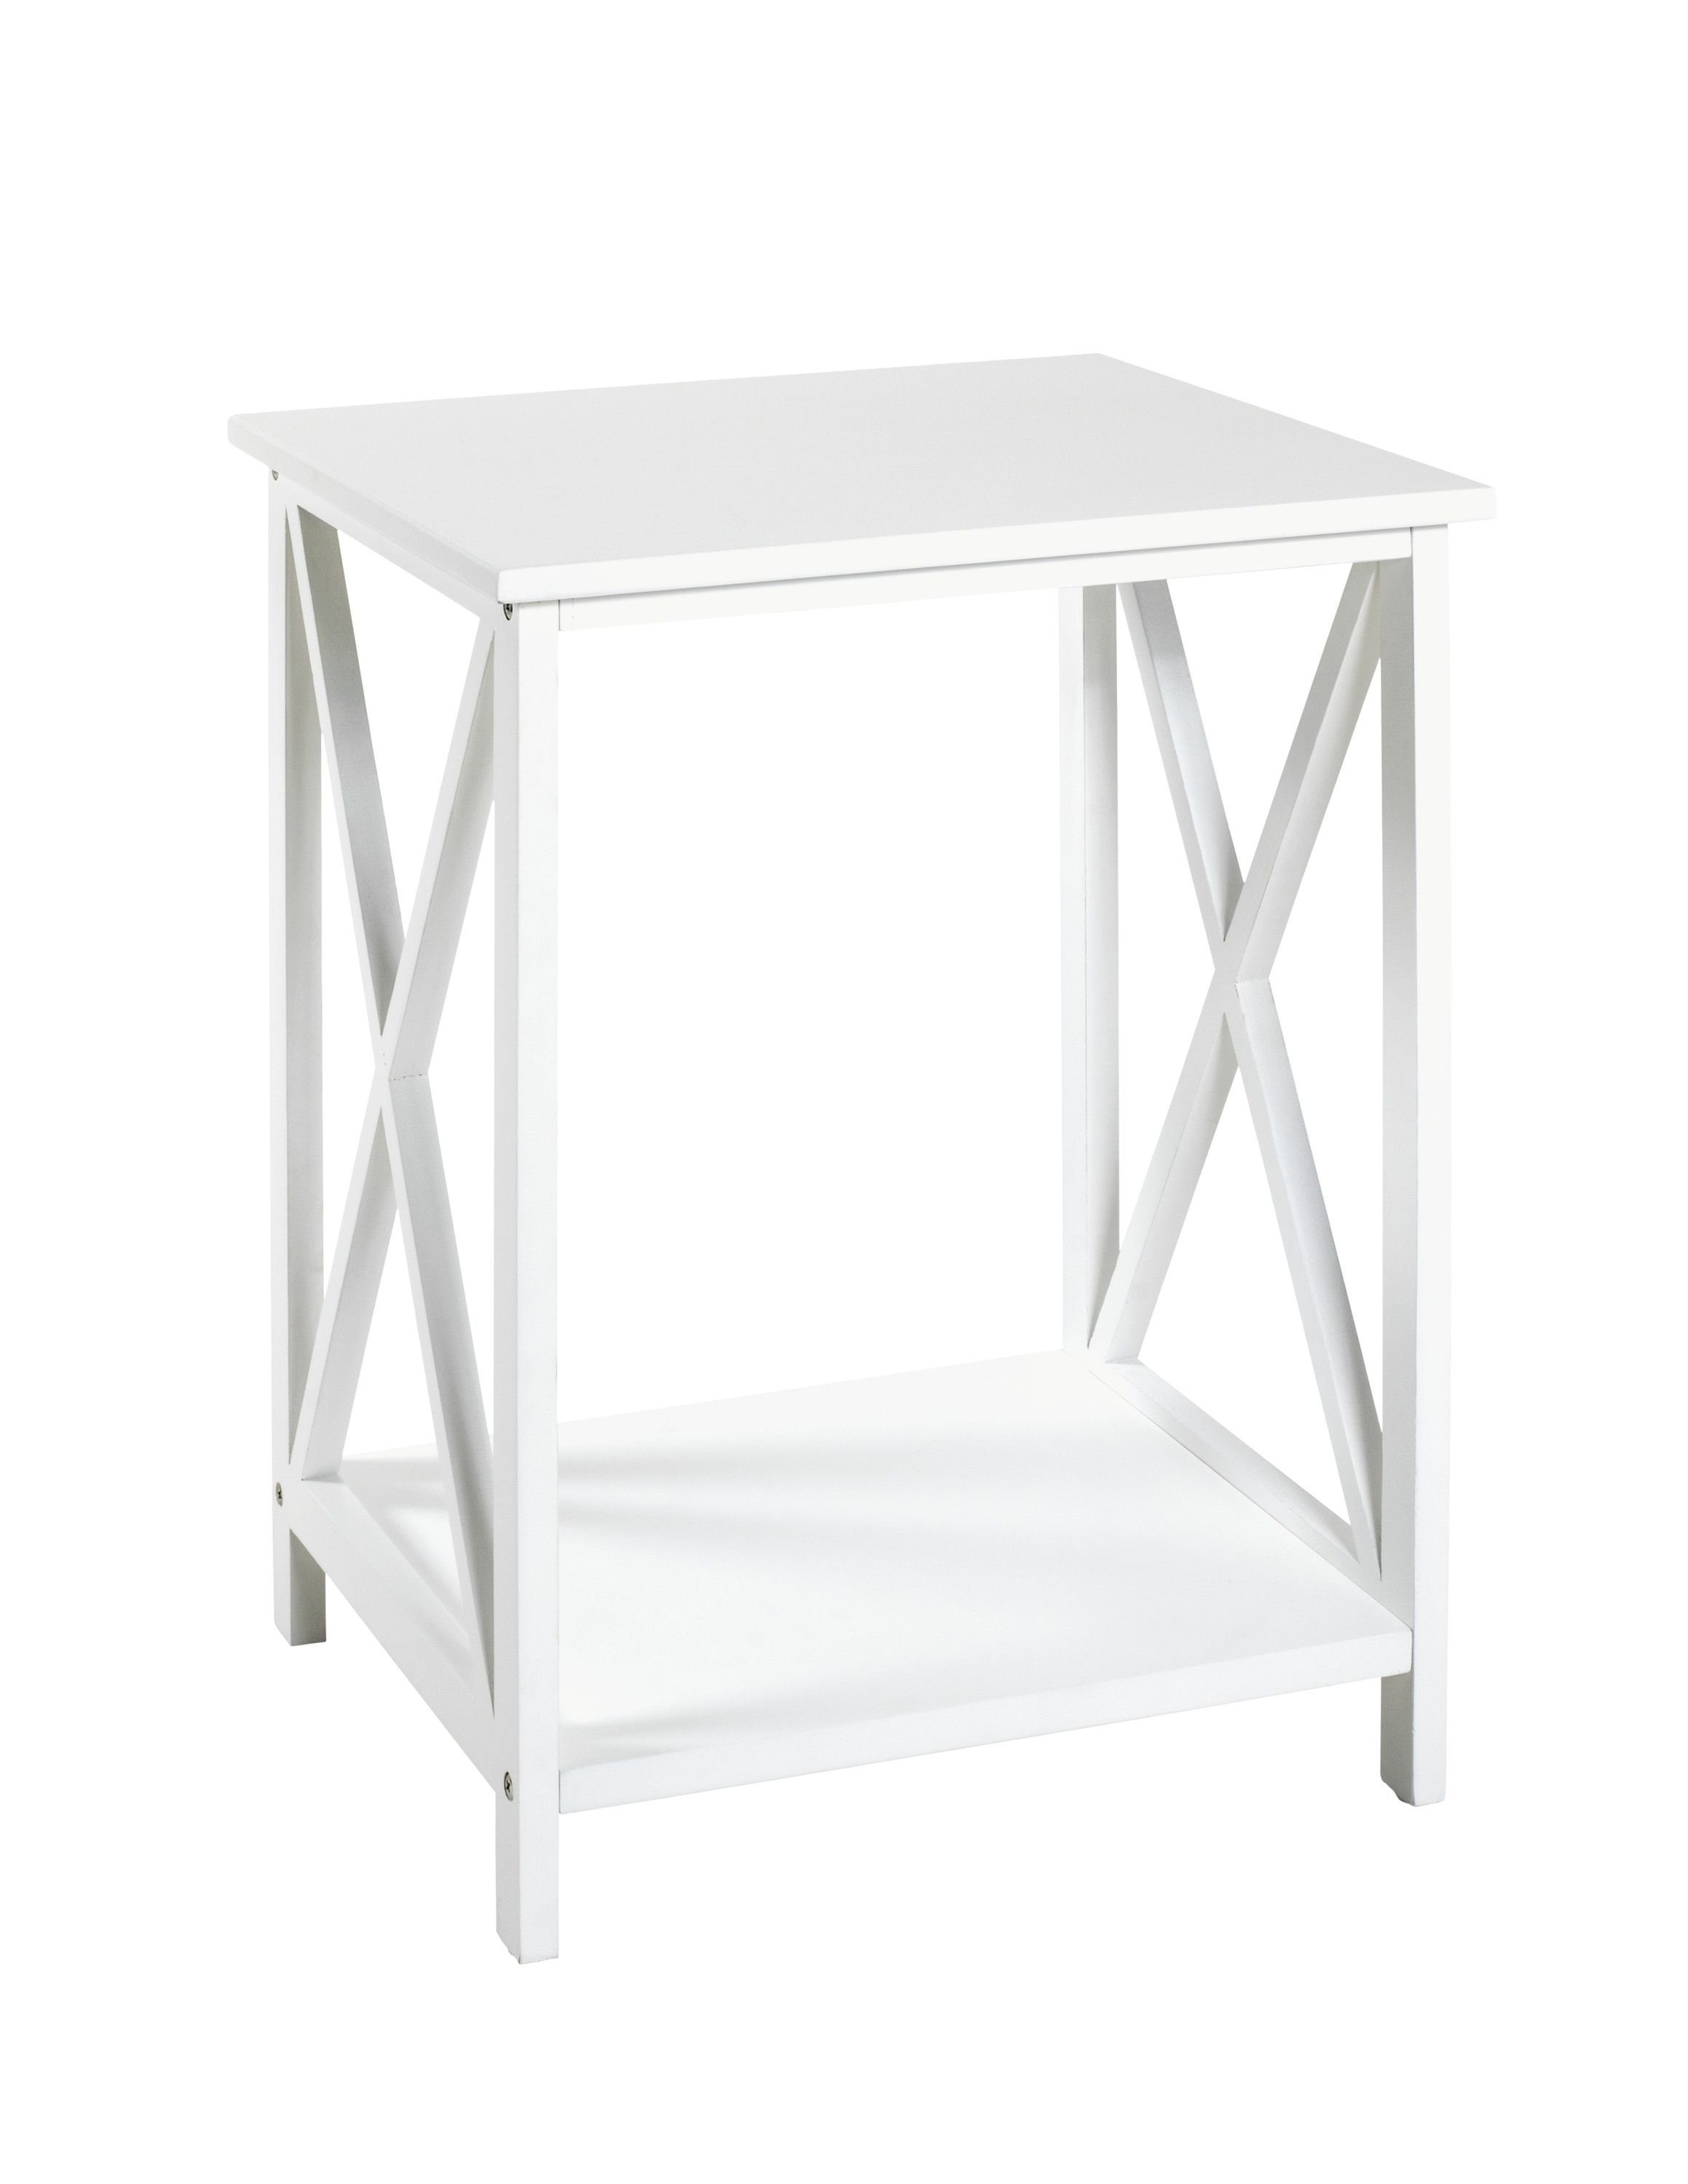 HAKU Beistelltisch Beistelltisch, HAKU Möbel Beistelltisch (BHT 44x60x40 cm) BHT 44x60x40 cm weiß